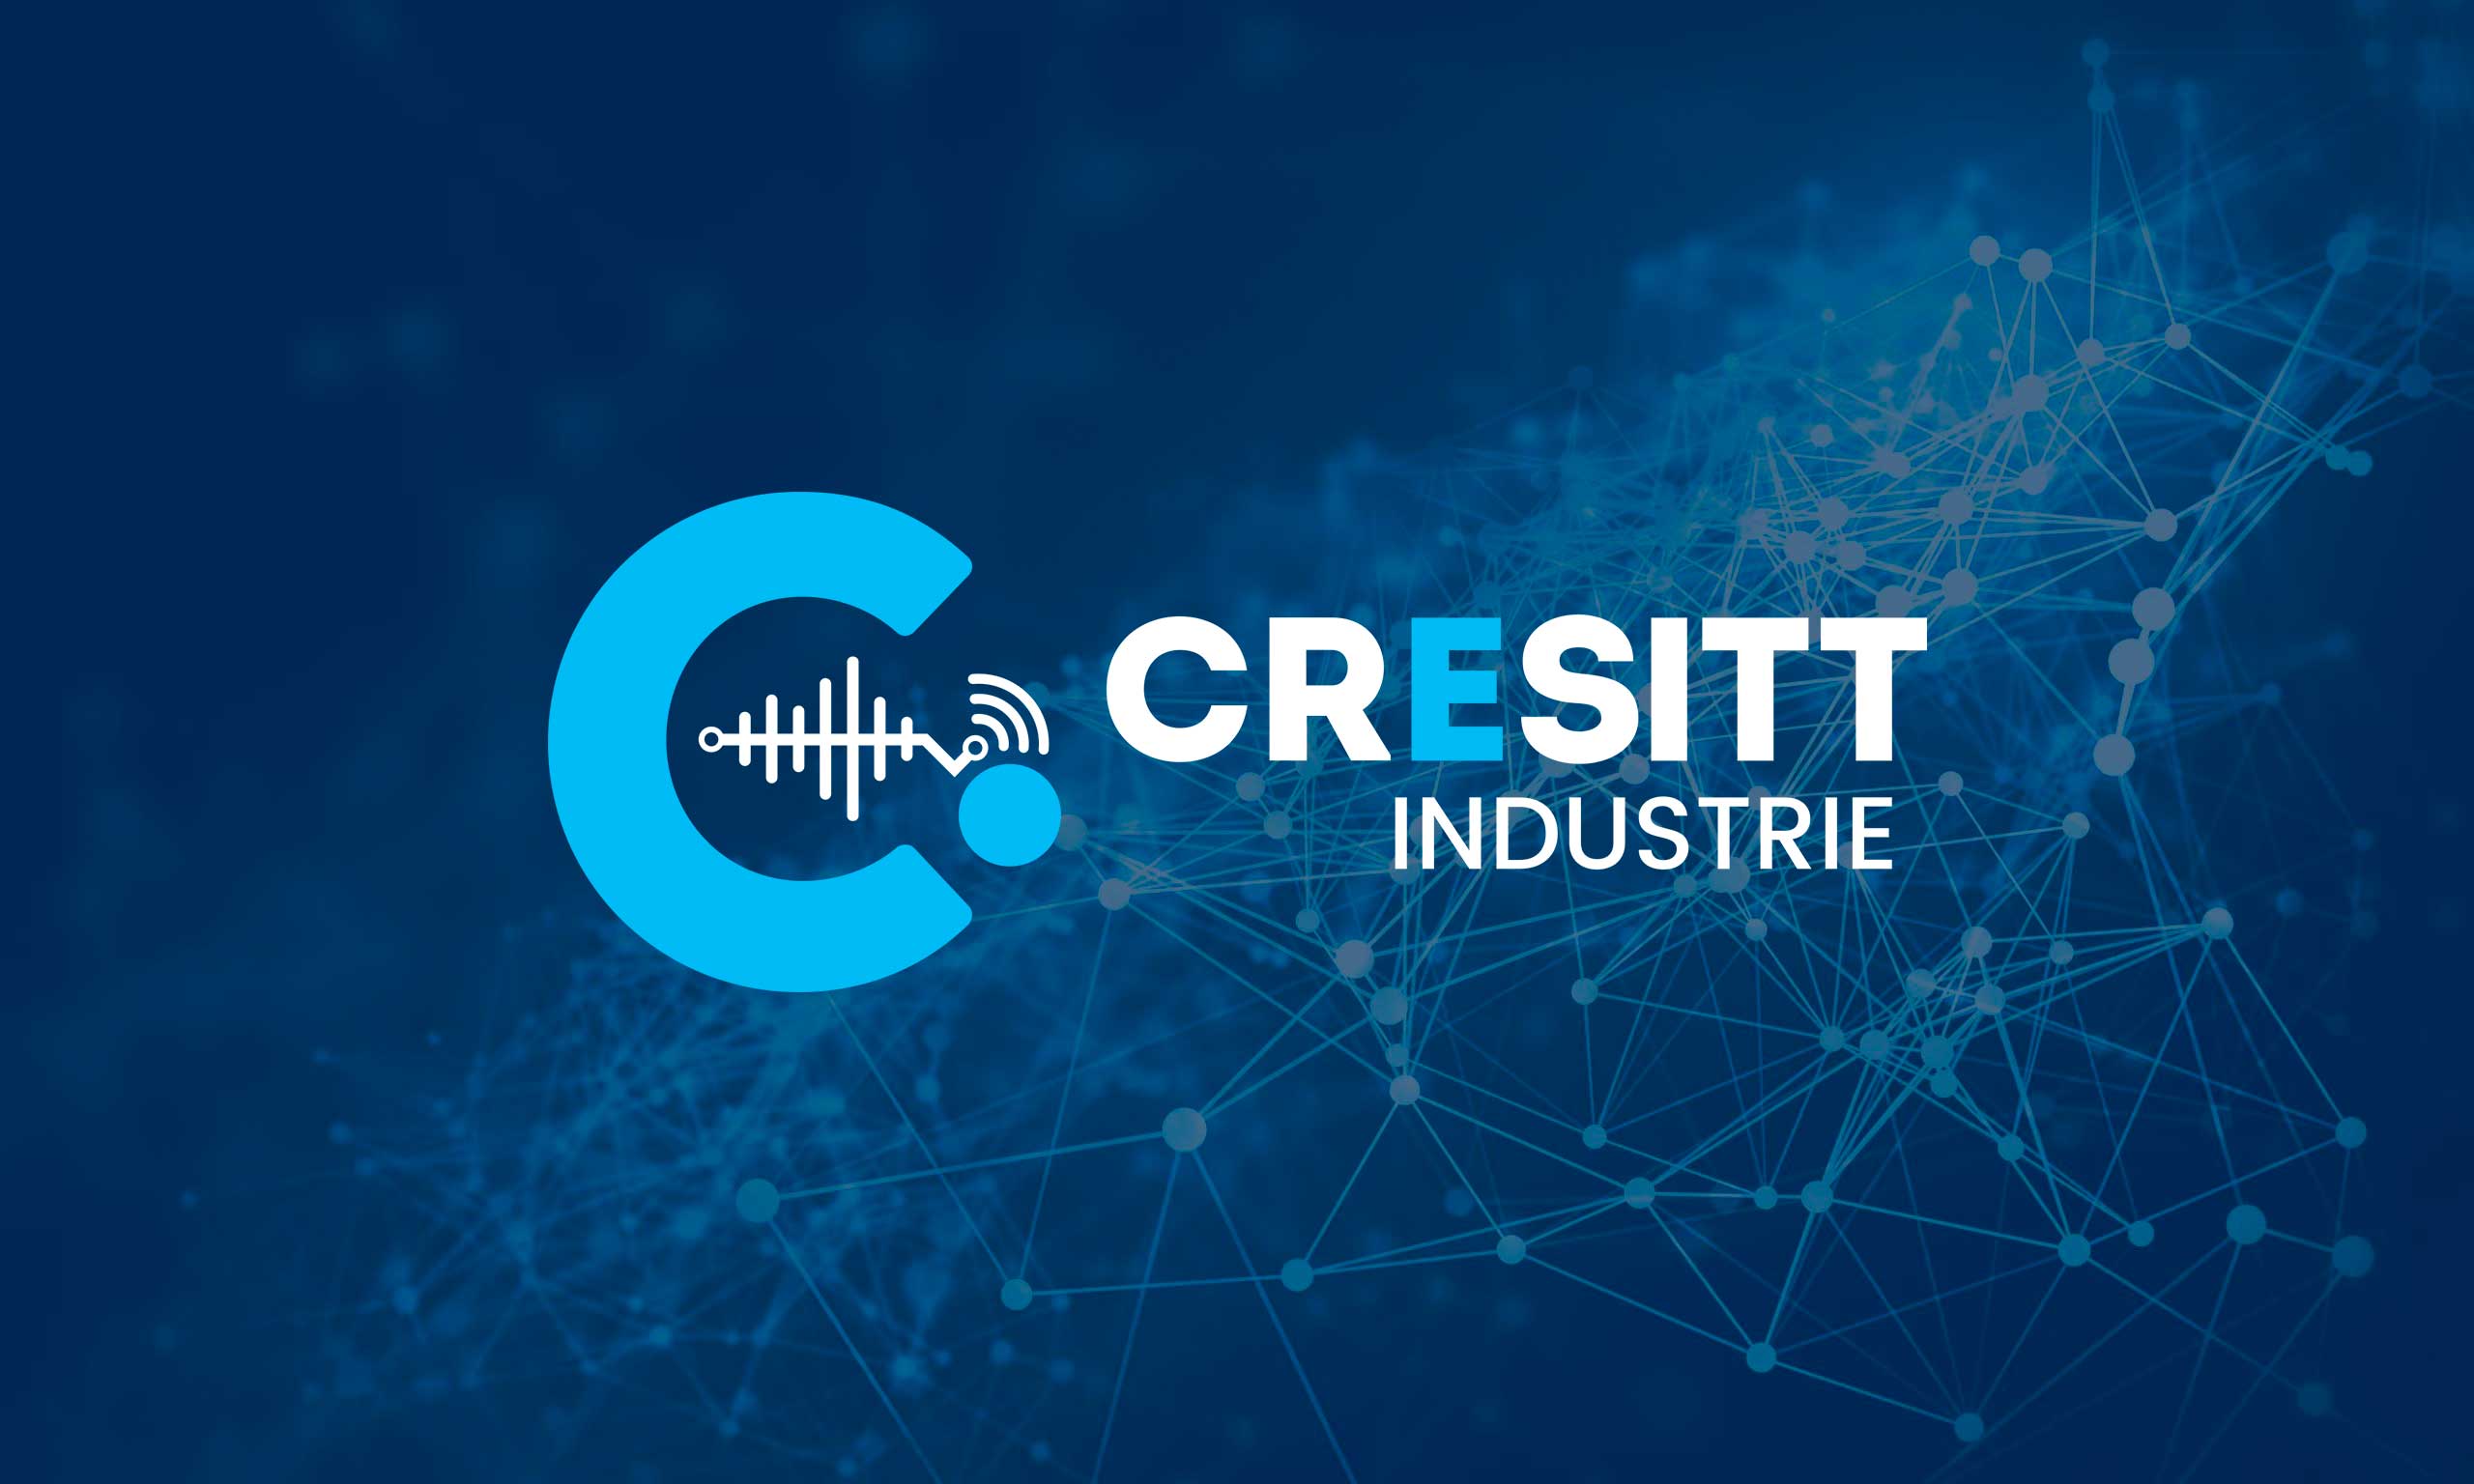 (c) Cresitt.com